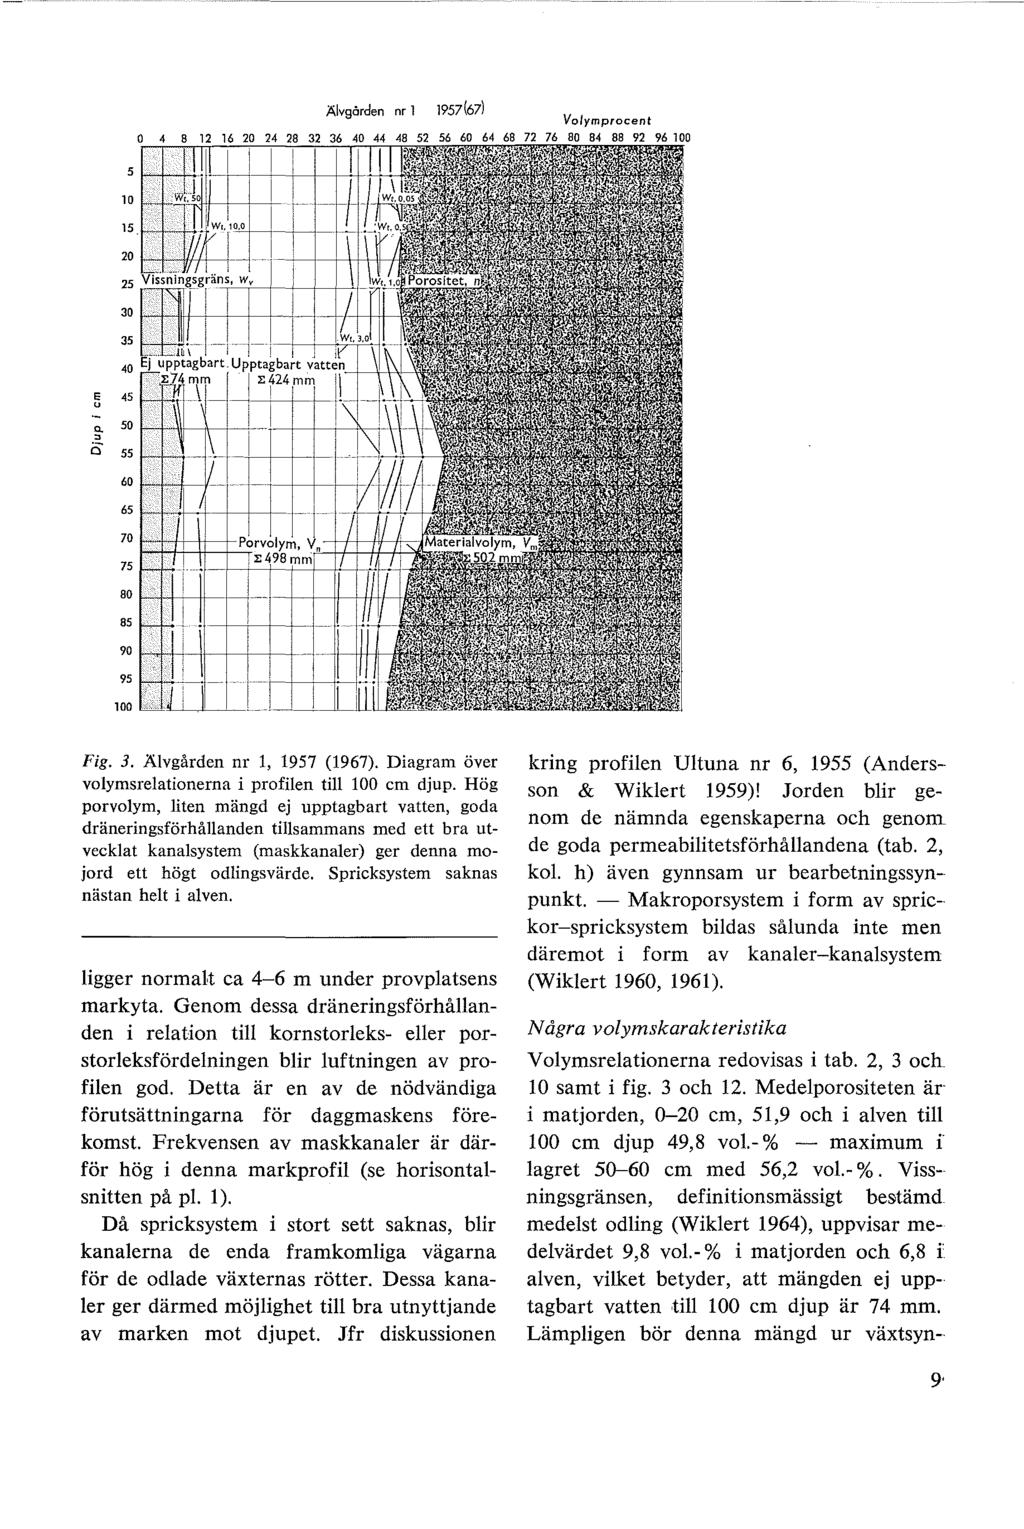 Alvgården nr l 1957(671 20 25 30 35 40 45 g. 50 i5 55 60 65 70 75 80 85 90 95 100 Fig. 3. Älvgården nr l, 1957 (1967). Diagram över volymsrelationerna i profilen till 100 cm djup.